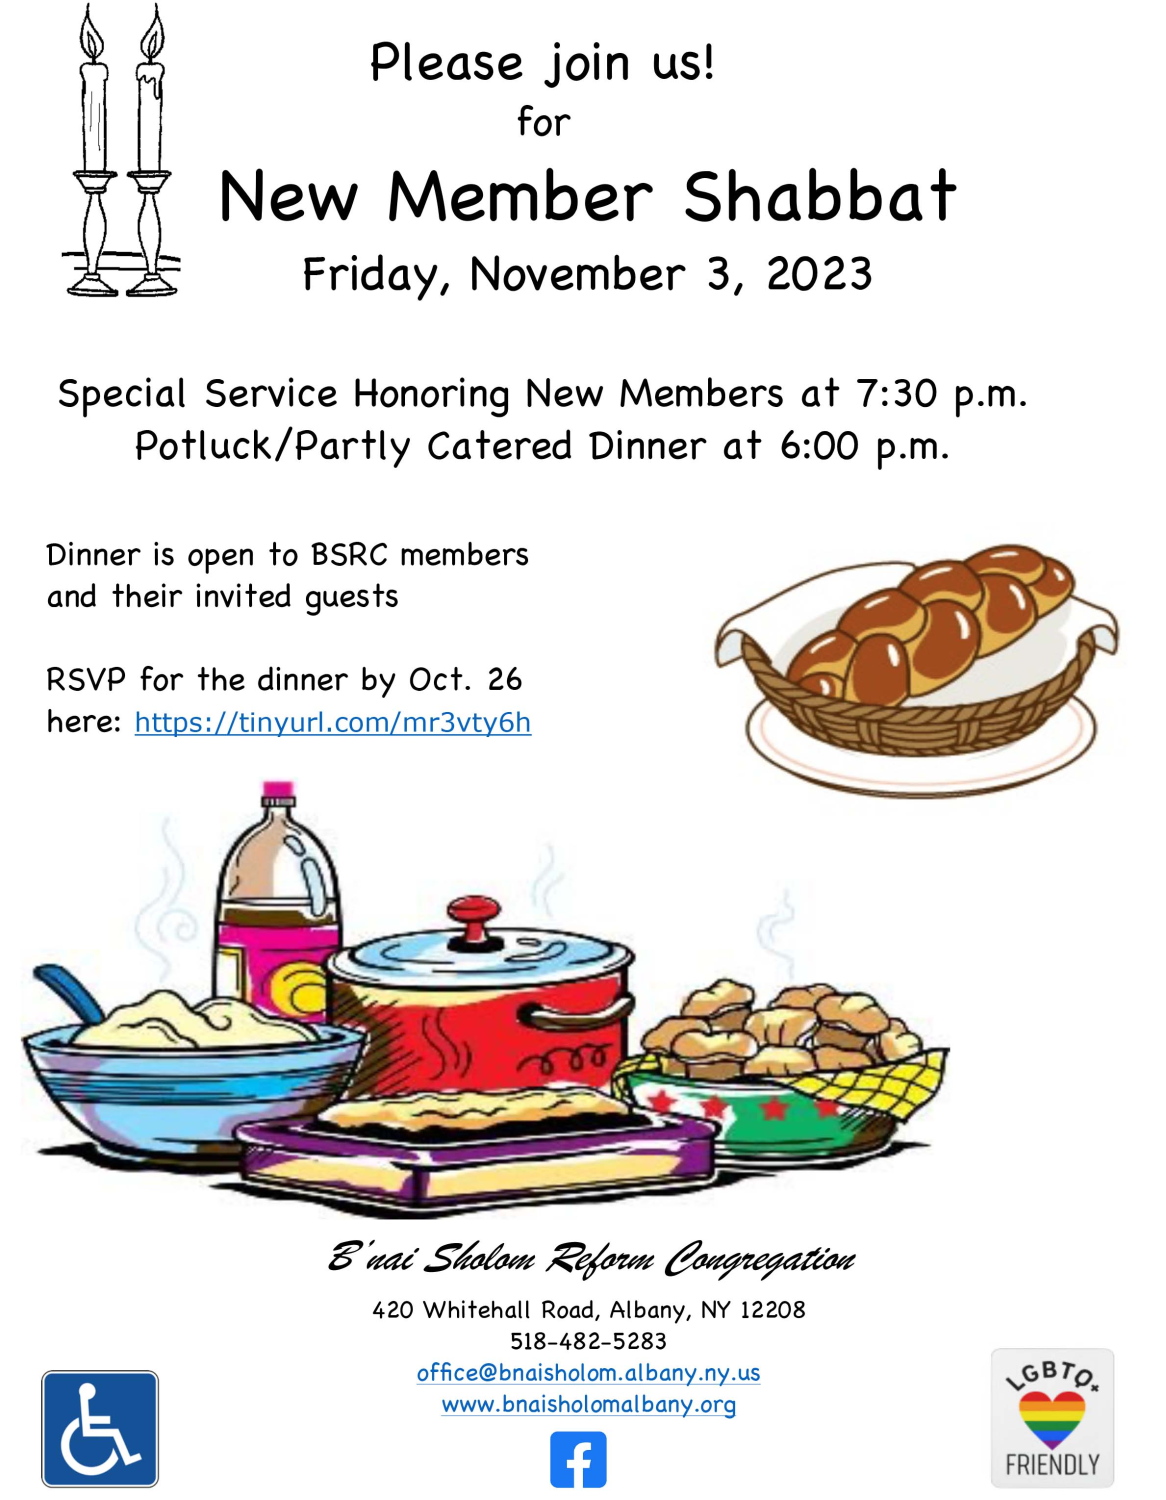 New Member Shabbat Dinner